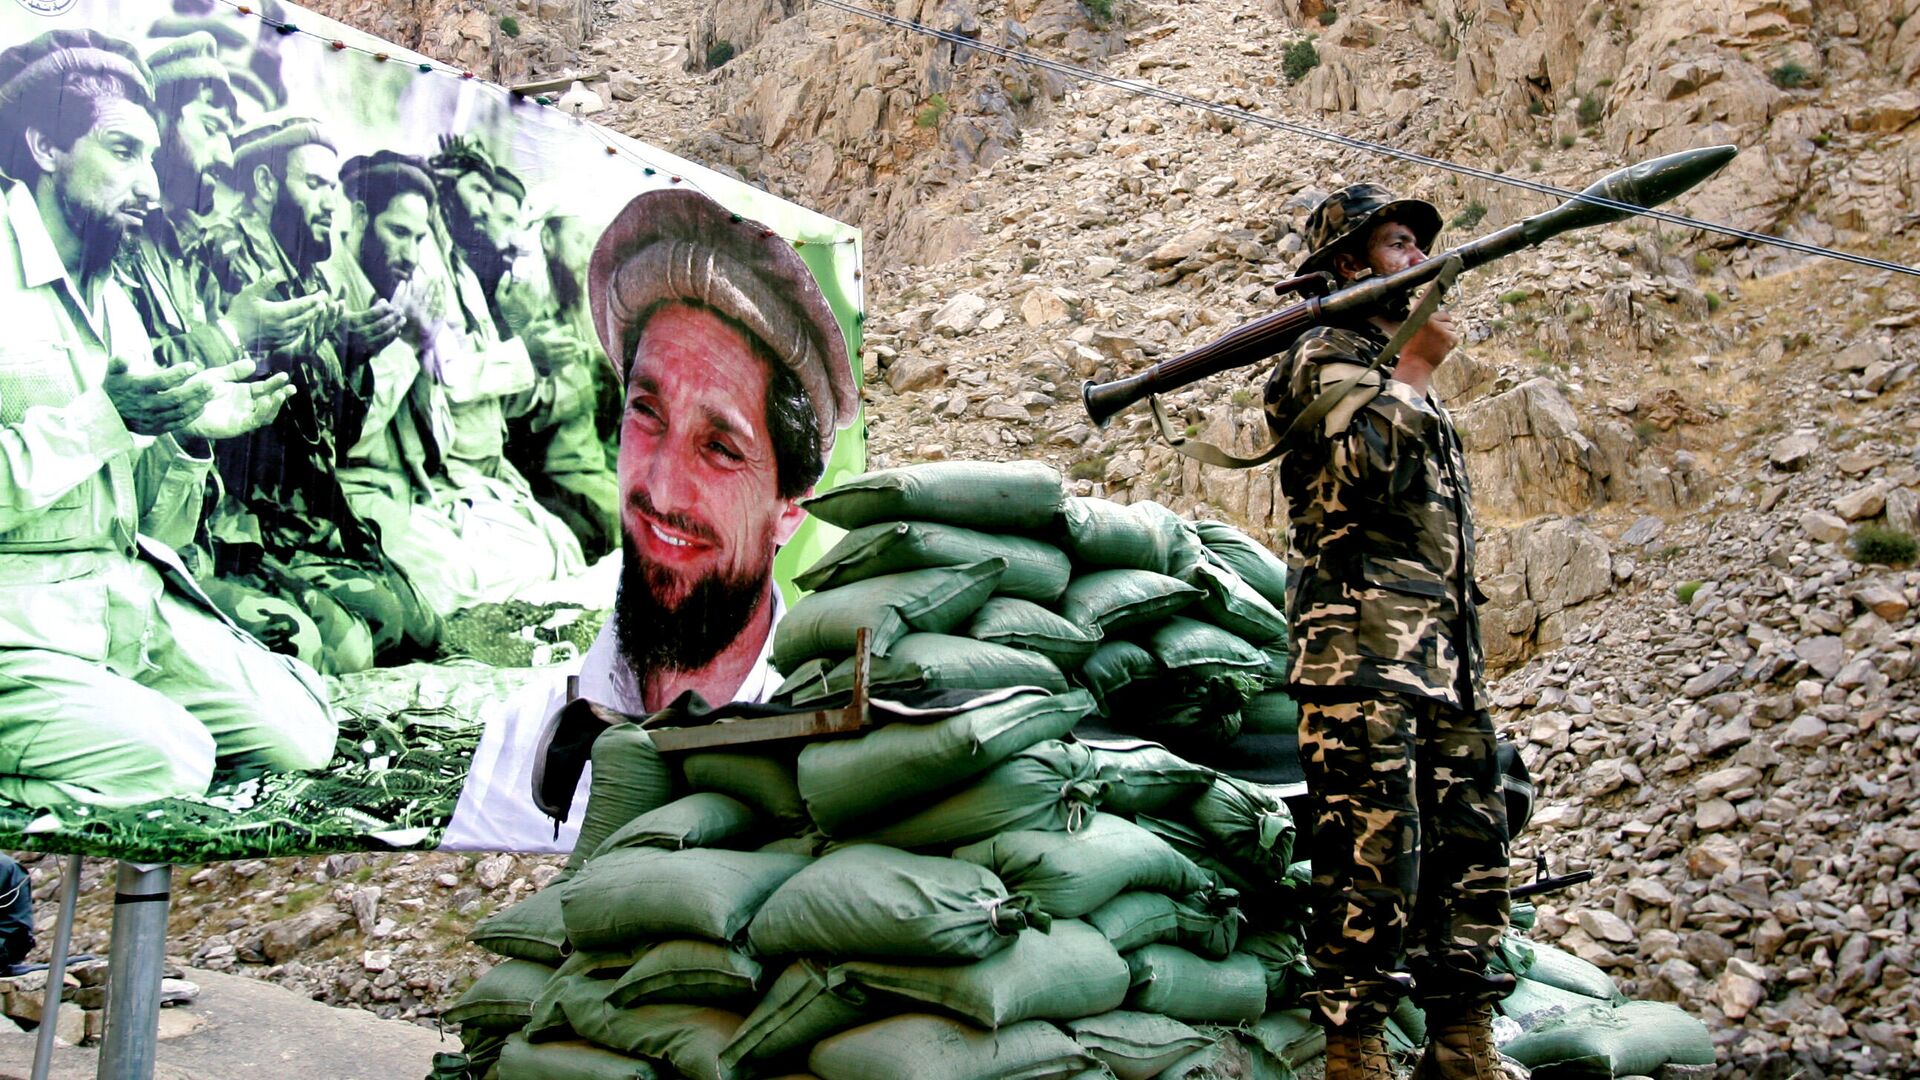 Soldado afgano frente el poster con Ahmad Shah Masud, señor de la guerra de Afganistán conocido como 'el león de Panshir' (archivo) - Sputnik Mundo, 1920, 20.08.2021